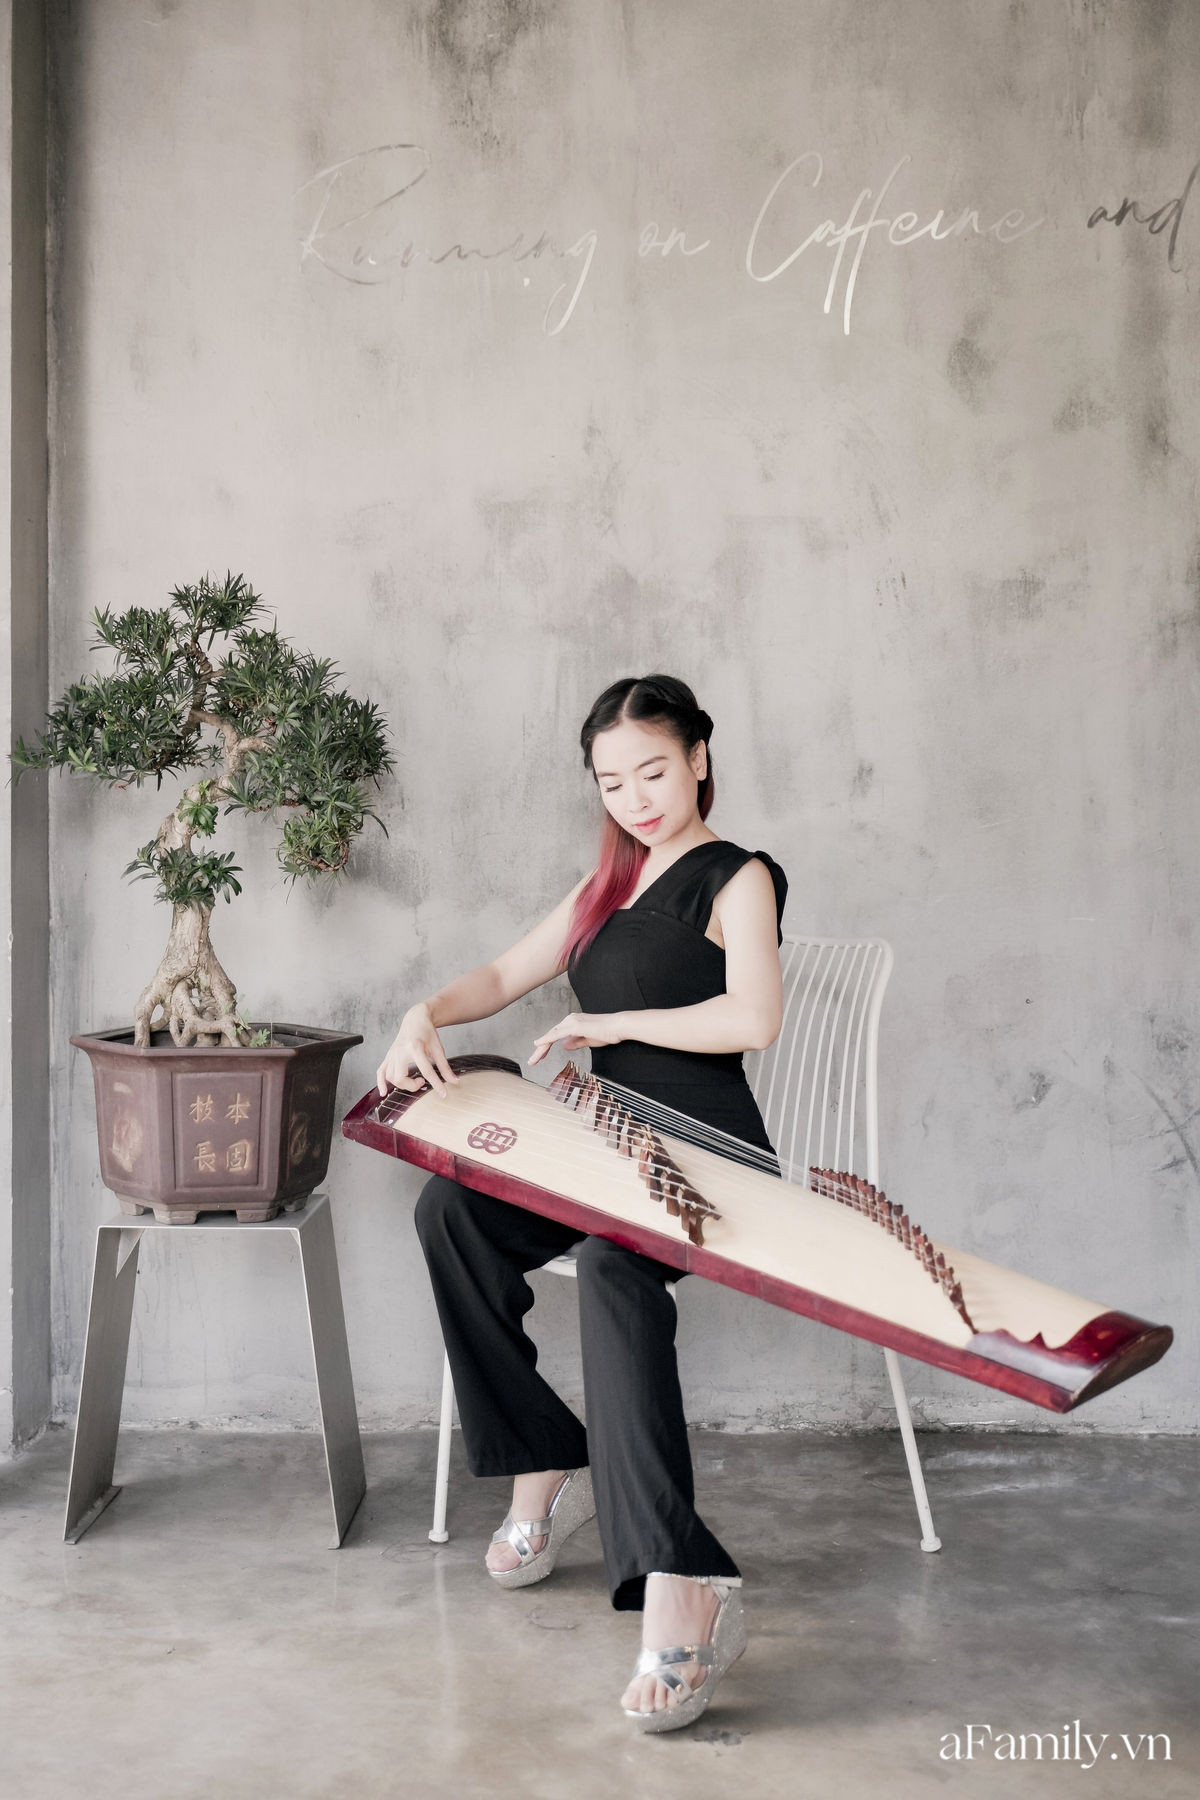 Đinh Khánh Ly: Từ một đứa trẻ trầm cảm trở thành cô giáo dạy đàn, là nhạc sĩ kiêm giám đốc thu nhập vài trăm triệu mỗi tháng tất cả đều là hành trình dài khó ai ngờ - Ảnh 4.